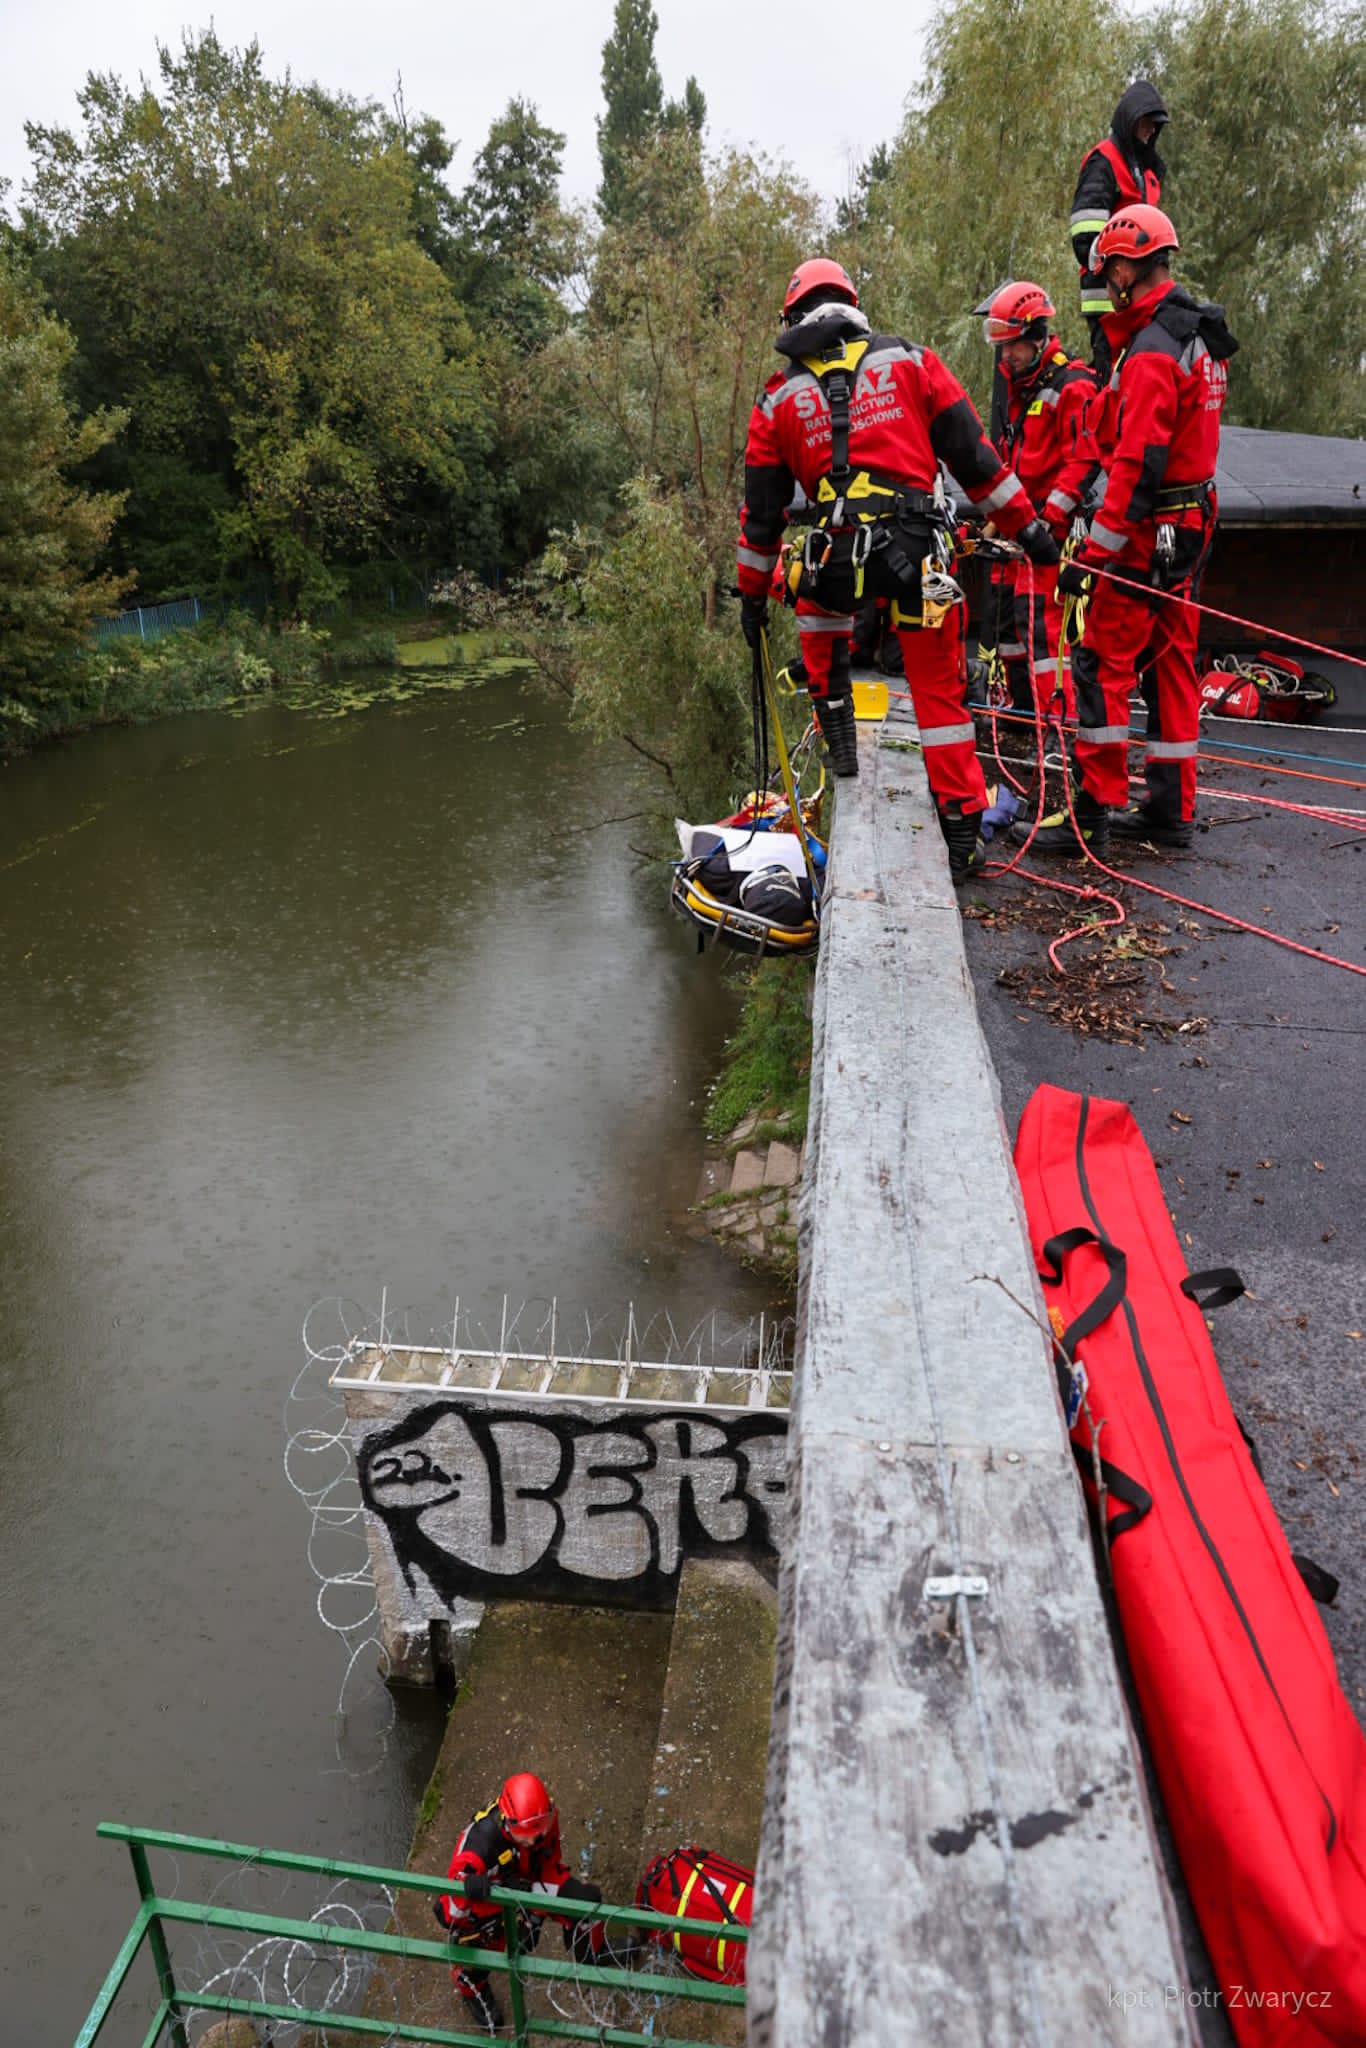 Zapora na rzece, na której widoczni są strażacy ze specjalistycznej grupy ratownictwa wysokościowego w umundurowaniu w kolorze czerwonym.